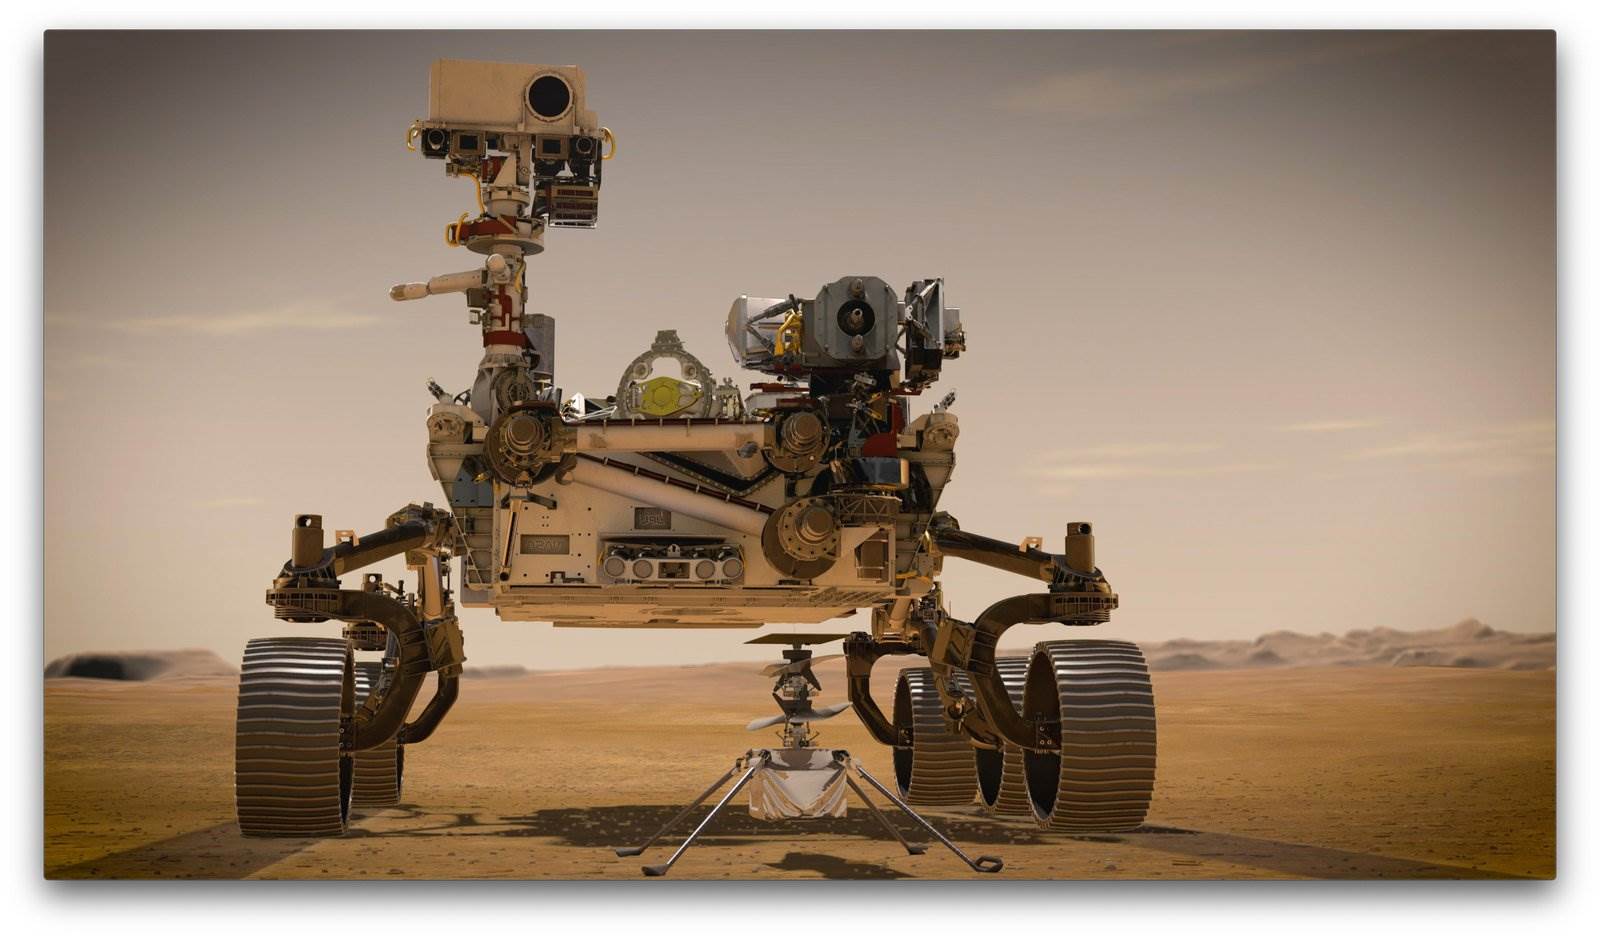  Pratite kretanje Rovera na dijelu Marsa nazvanog po opštini Jezero 